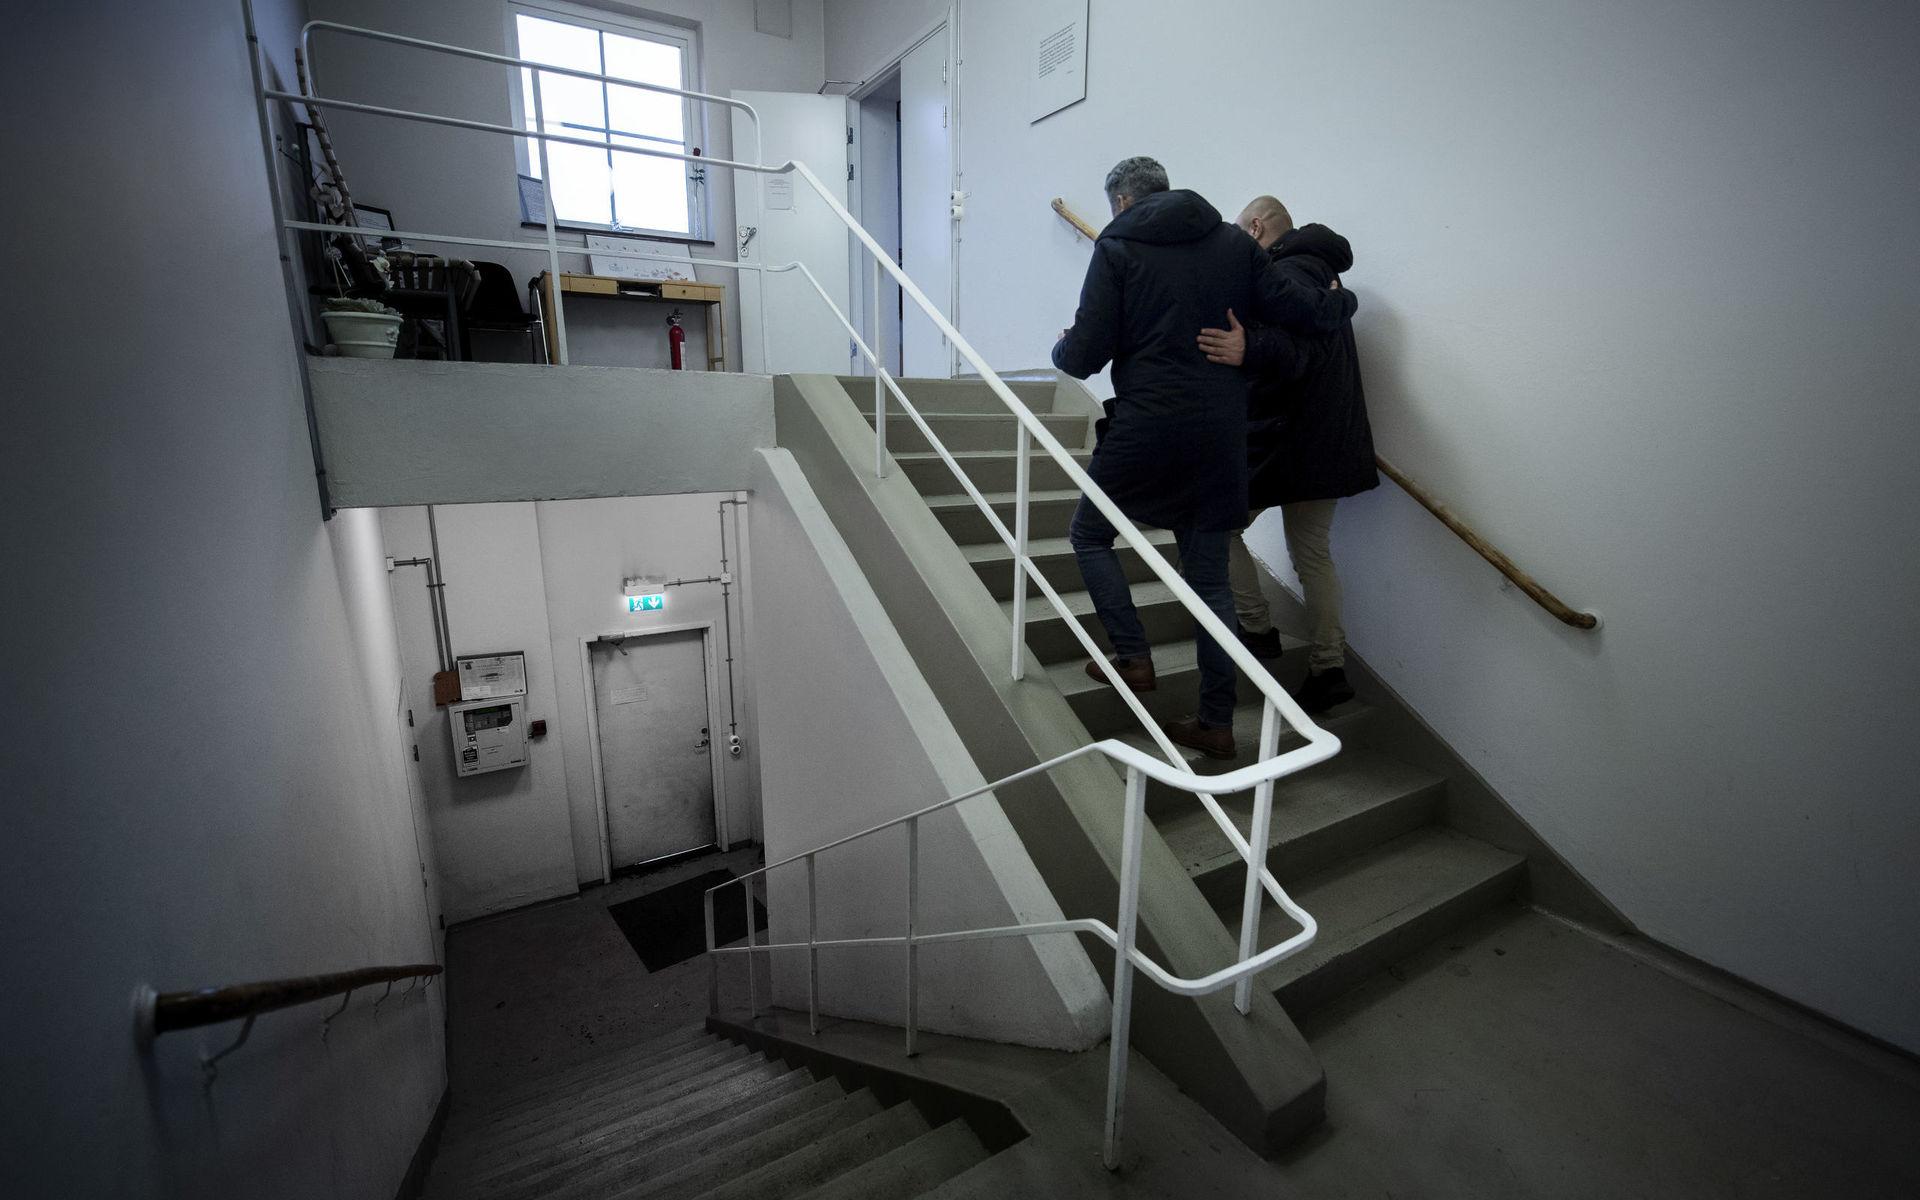 Känslofyllt. Rozbeh Aslanian och Amir Sahara går upp för trappan till brandlokalen. En lokal fylld av minnen.